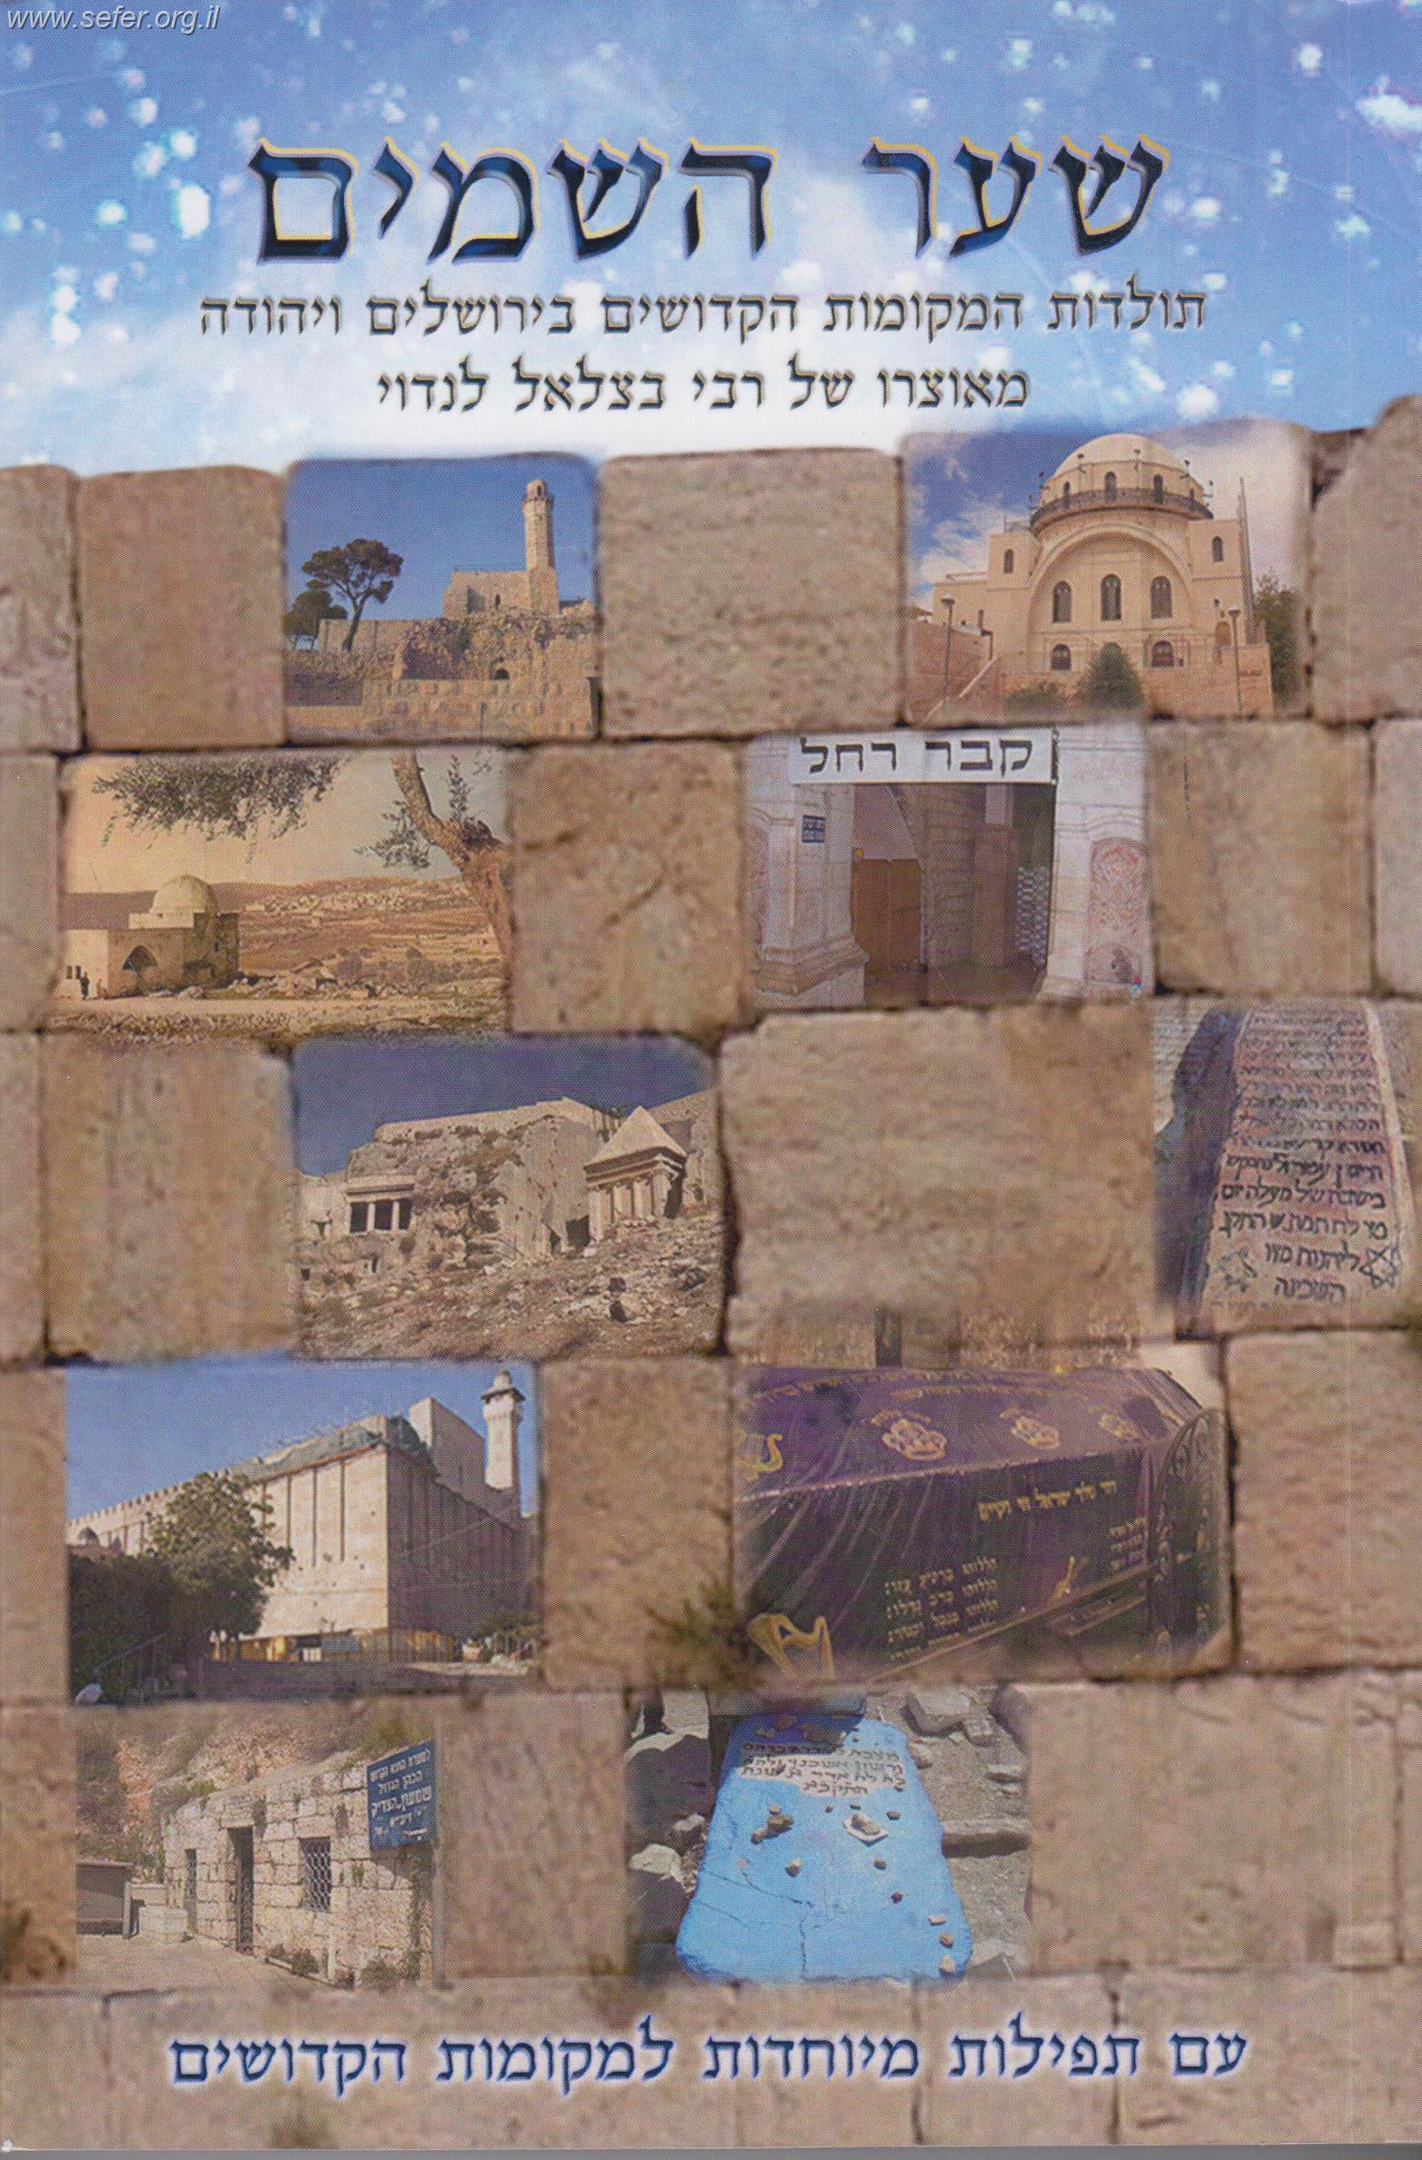 שער השמיים - תולדות המקומות הקדושים בירושלים ויהודה / ר' בצלאל לנדוי